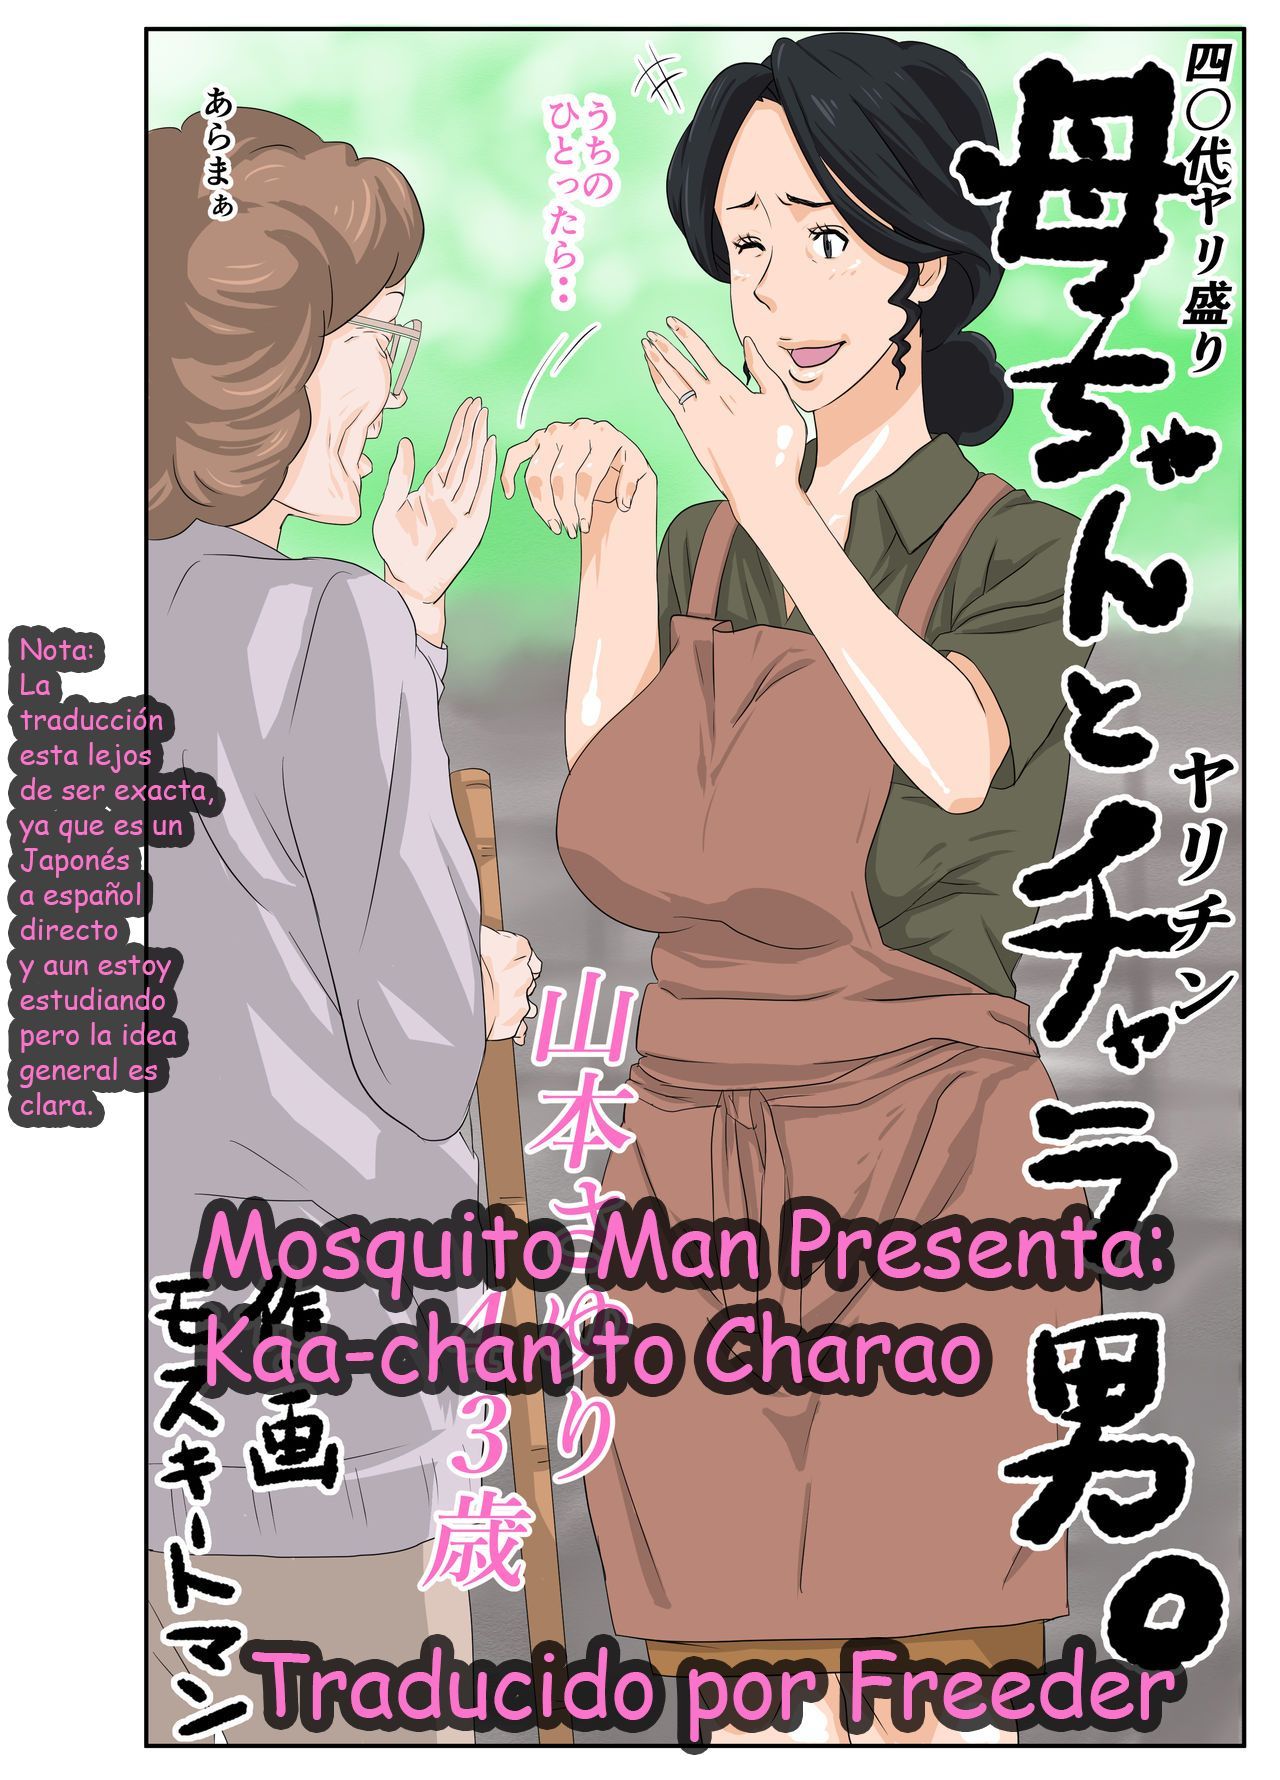 [Mosquito Man] Kaa-chan to Charao [Spanish]